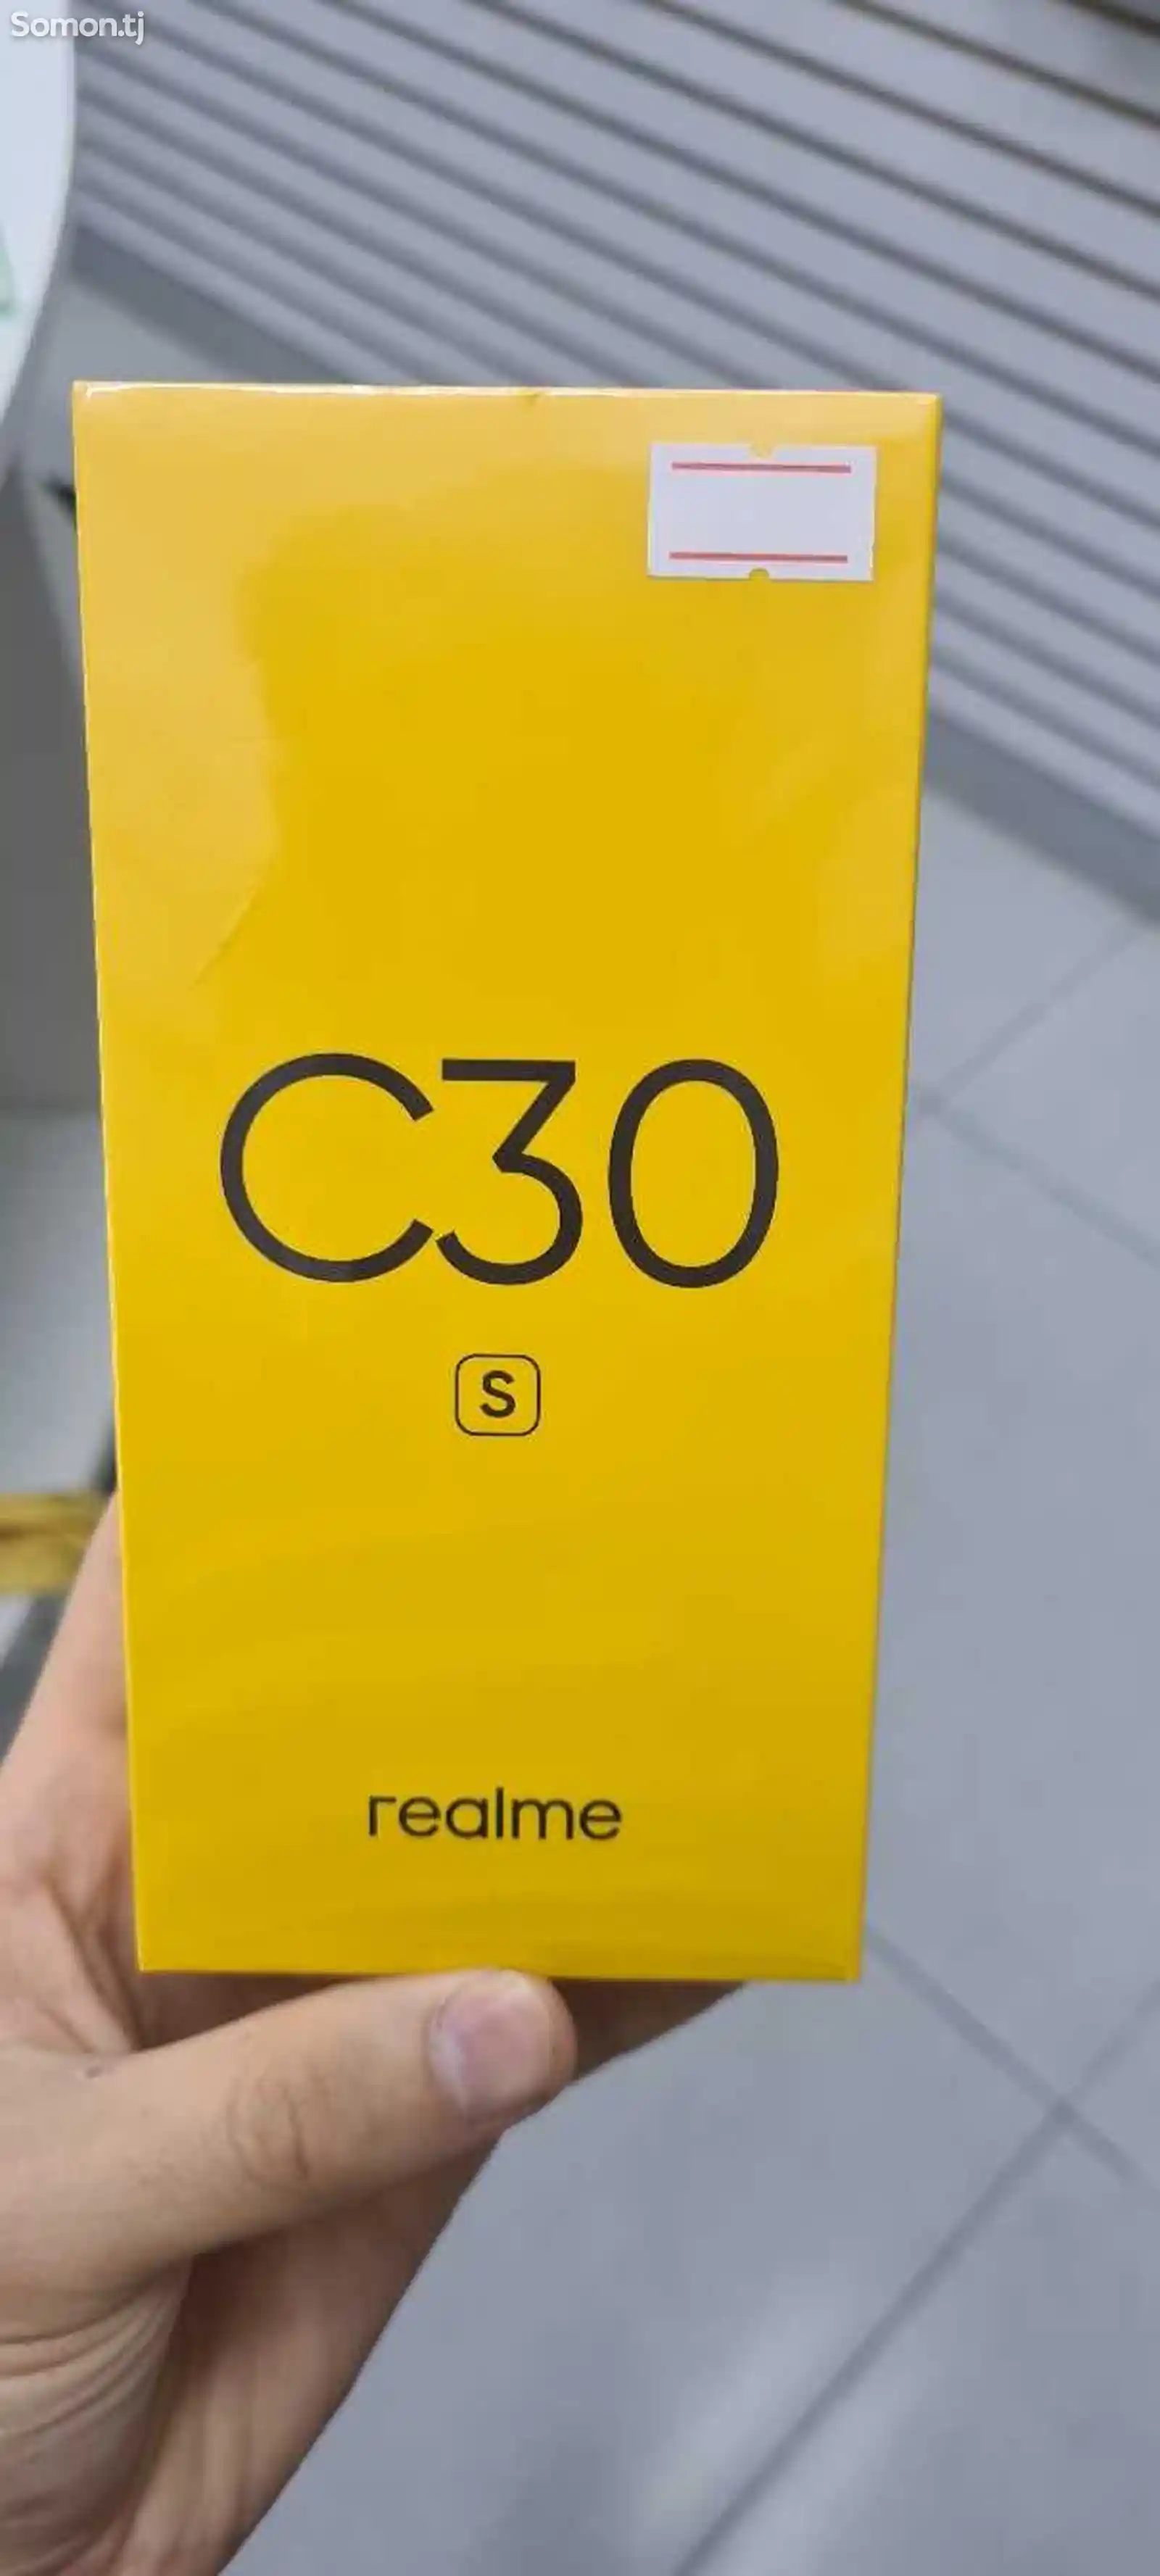 Realme C30s-1